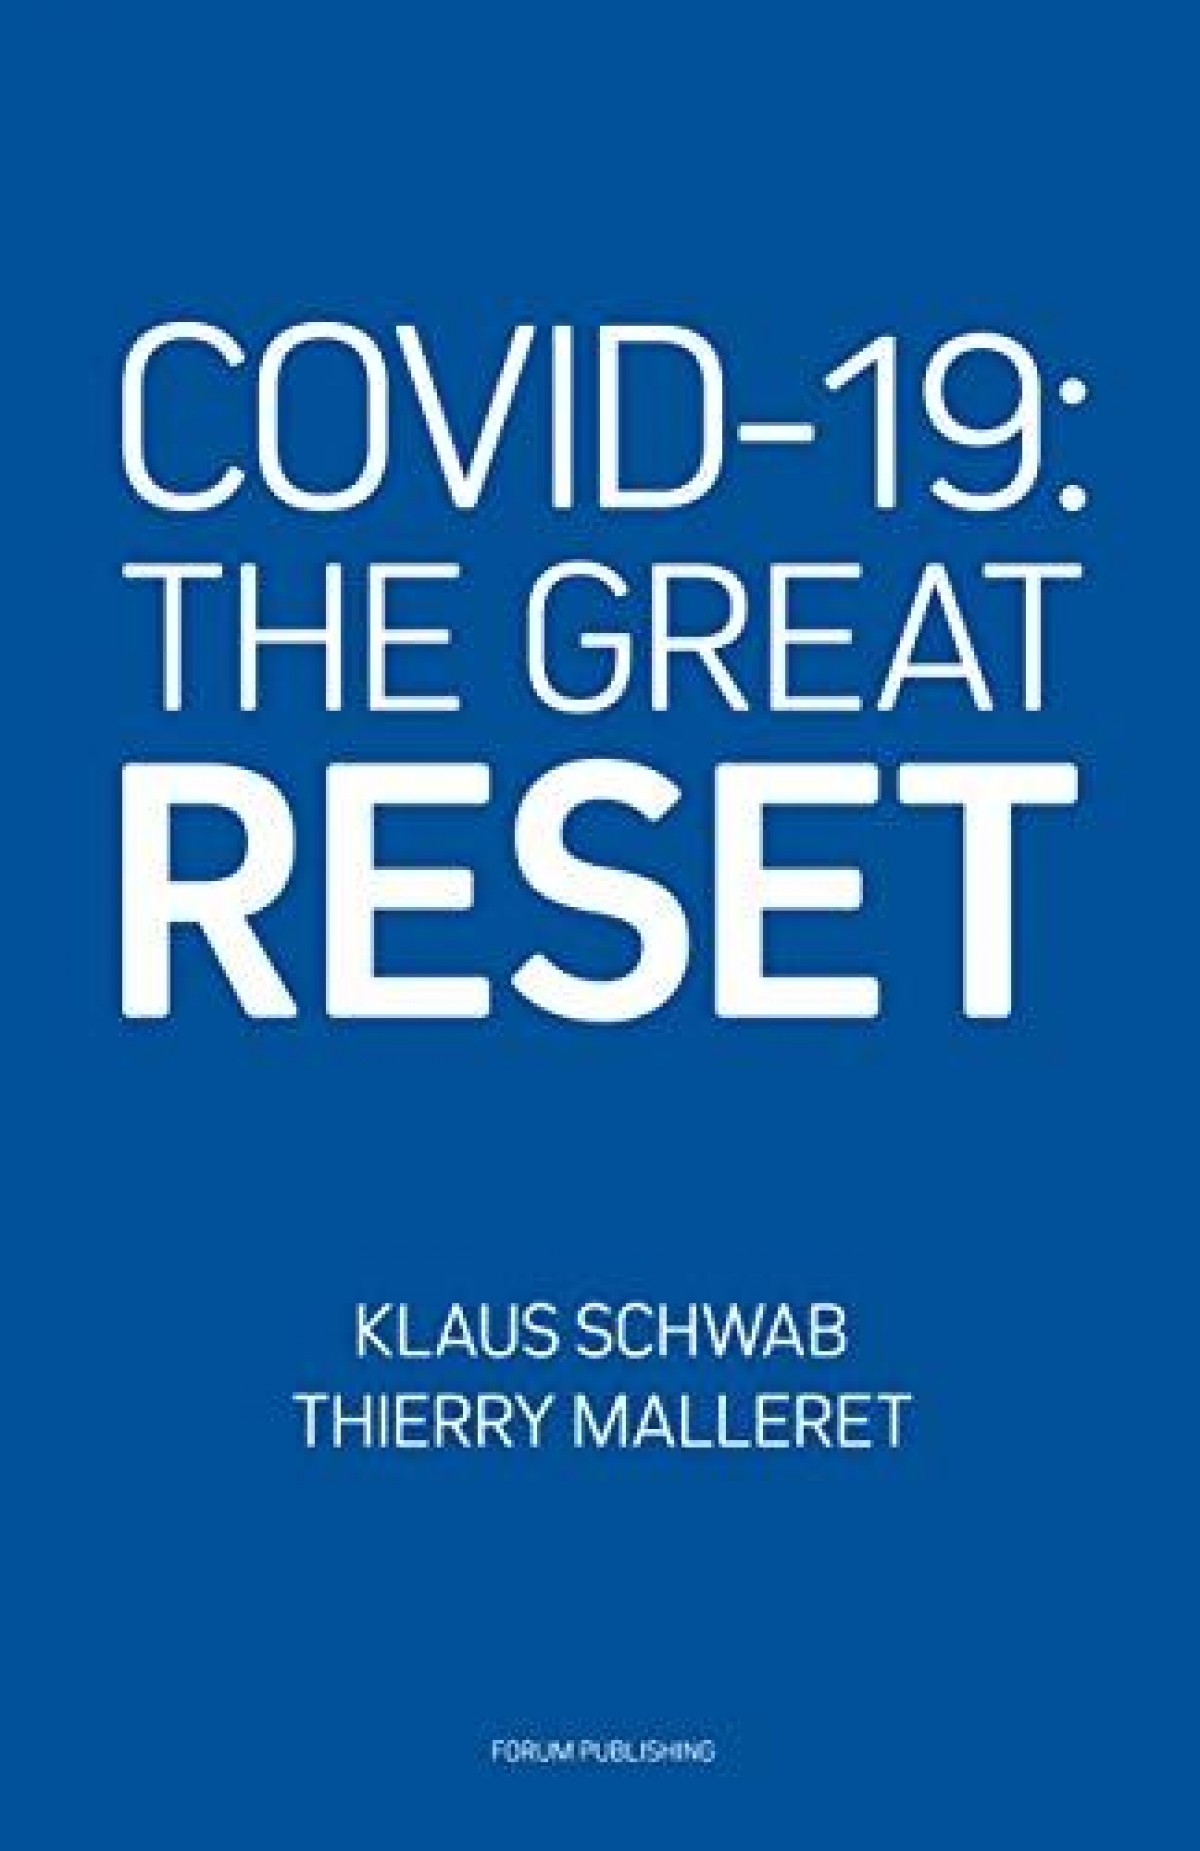 The Great Reset Клауса Шваба и Тьерри Маллерета как новый манифест  ультраглобалистов - Цифровая экономика